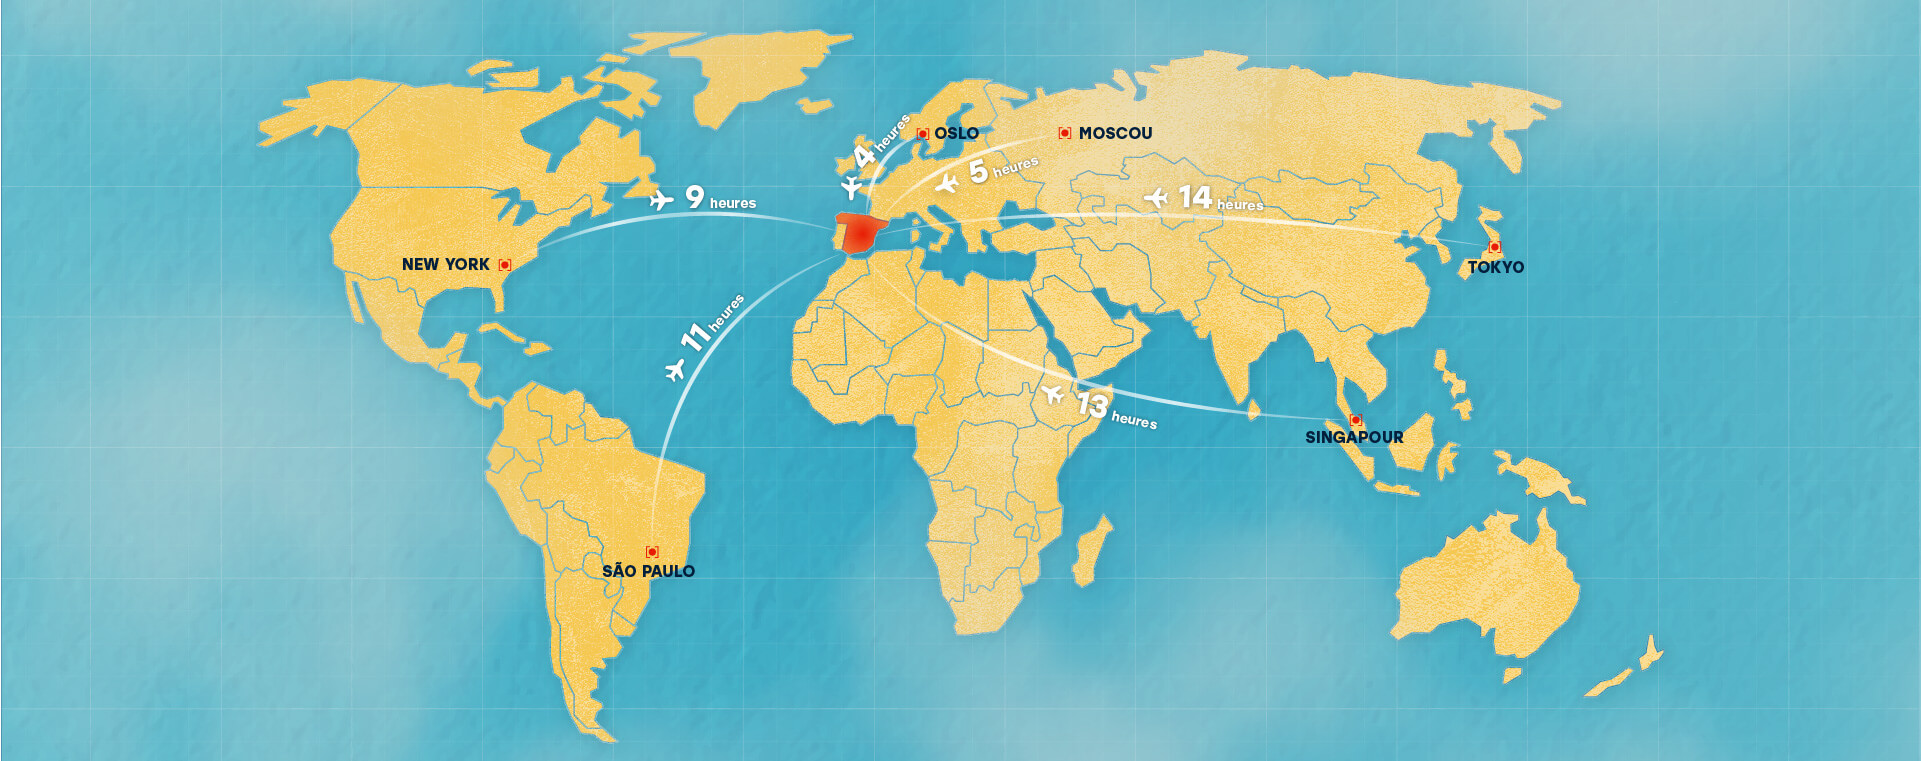 Carte du monde avec distances et durées de vol